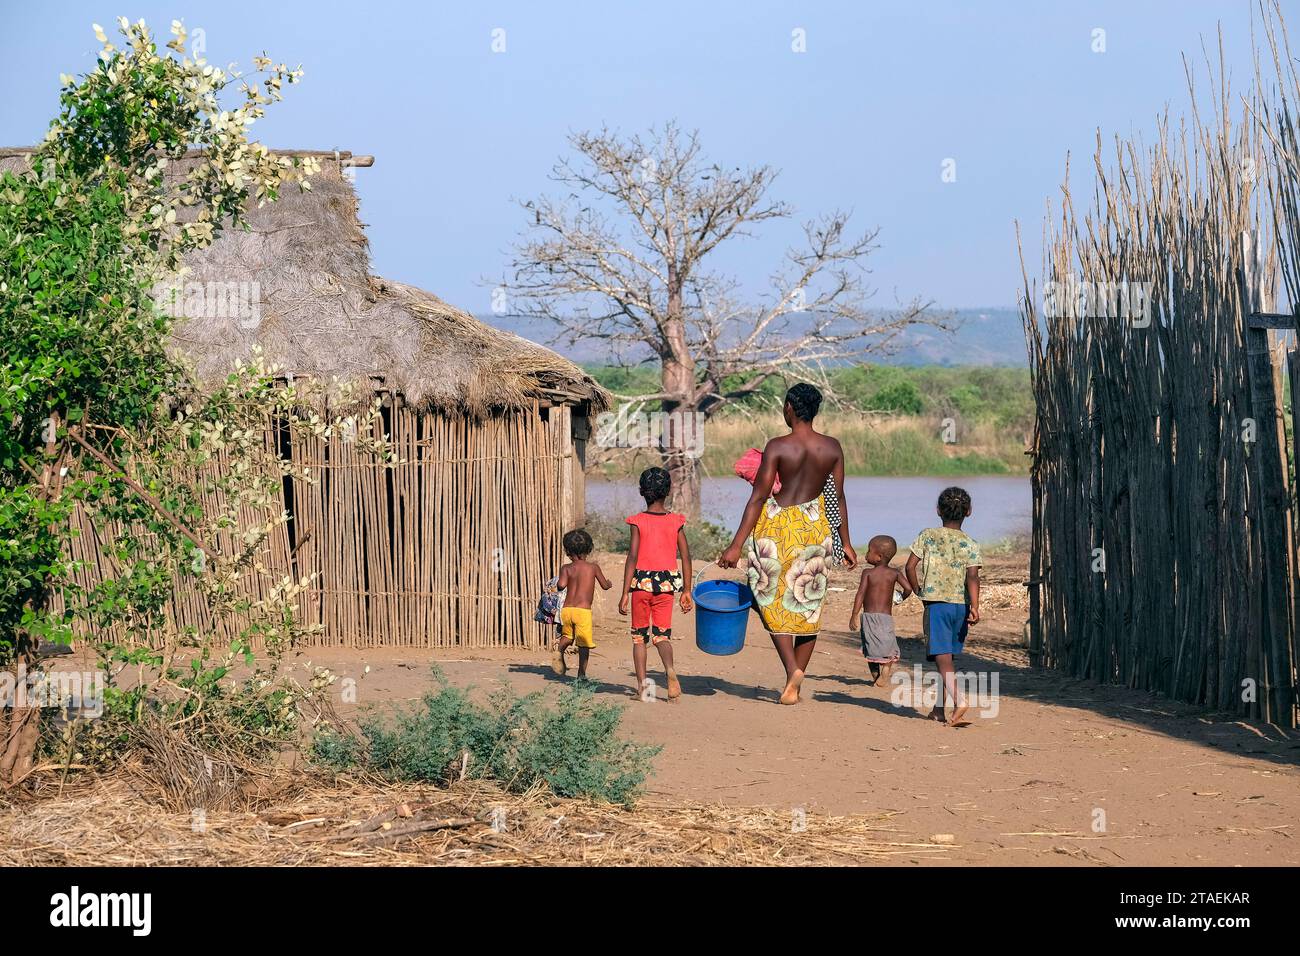 Femme malgache marchant avec des enfants pour obtenir de l'eau de la rivière Tsiribihina au village Ambotomisay, Menabe, hauts plateaux centraux, Madagascar, Afrique Banque D'Images